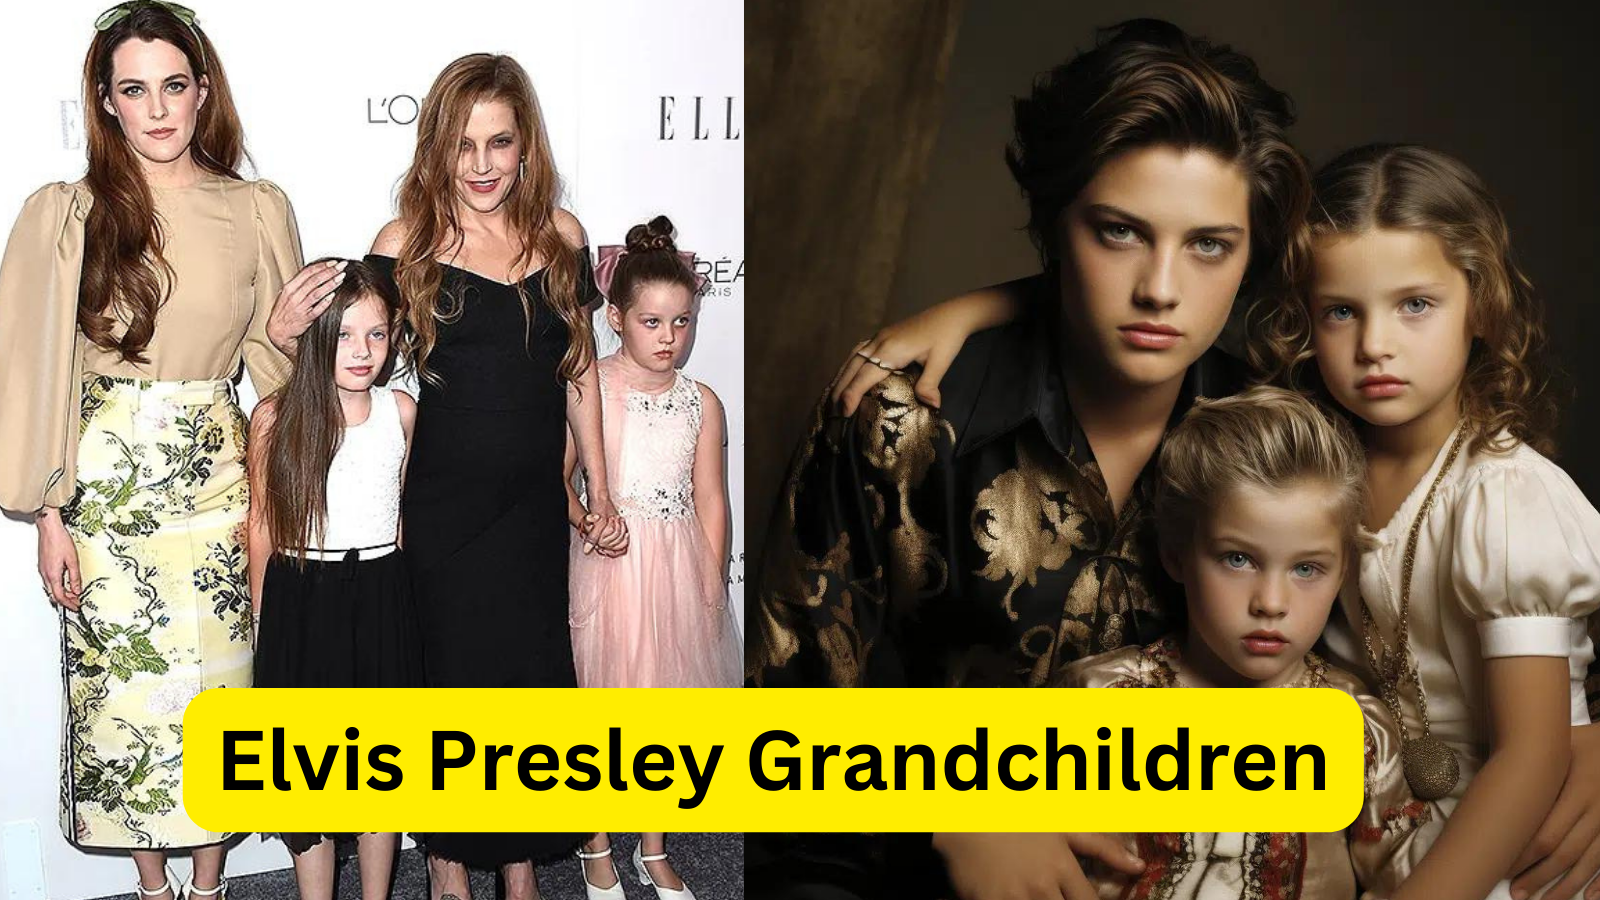 Elvis Presley Grandchildren